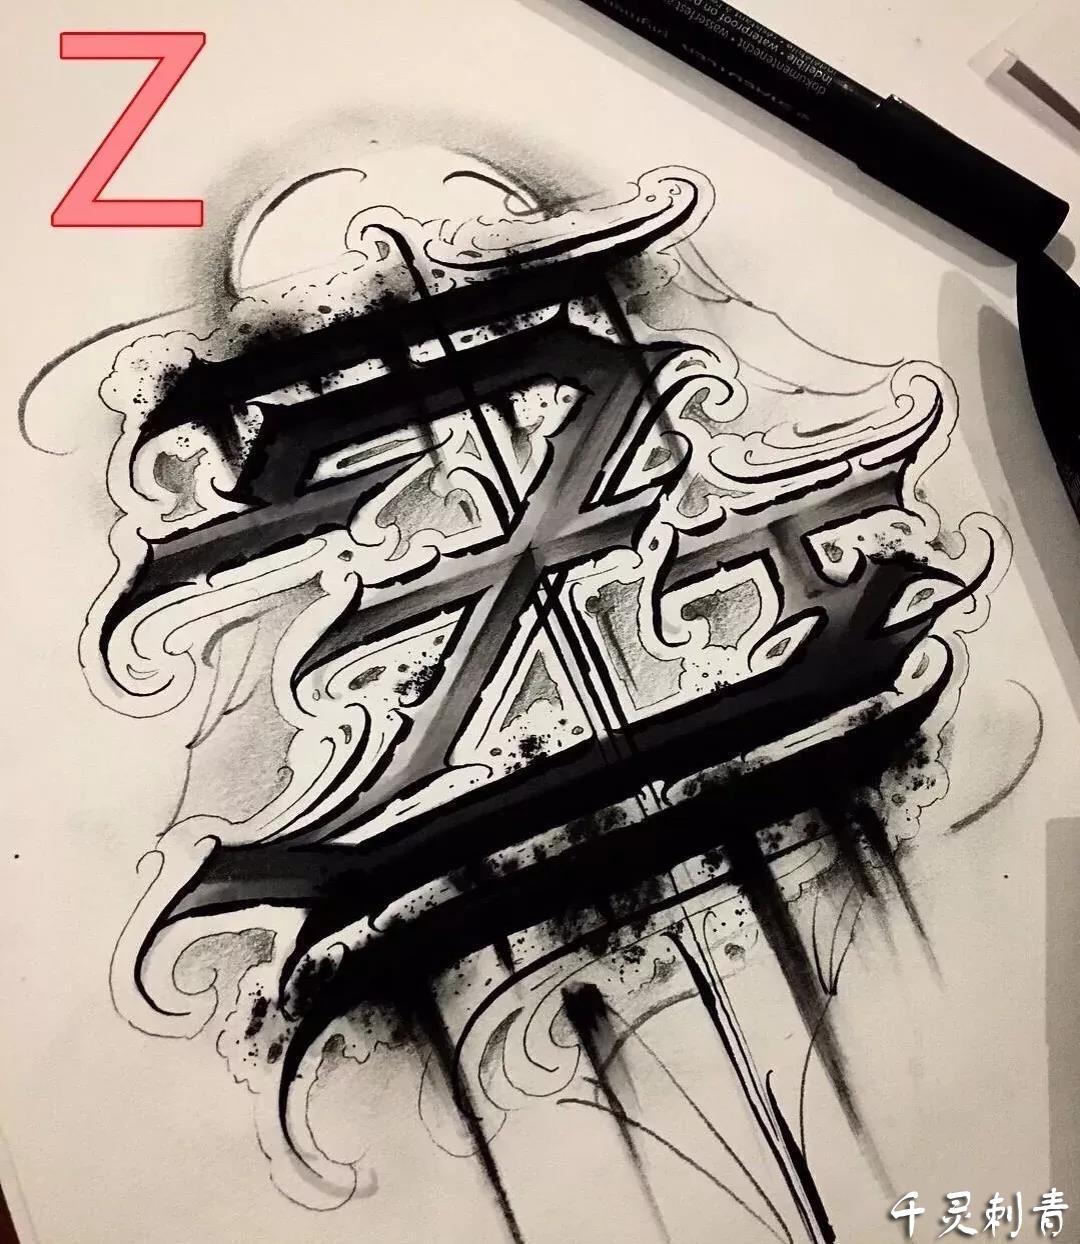 花体字Z纹身手稿图案